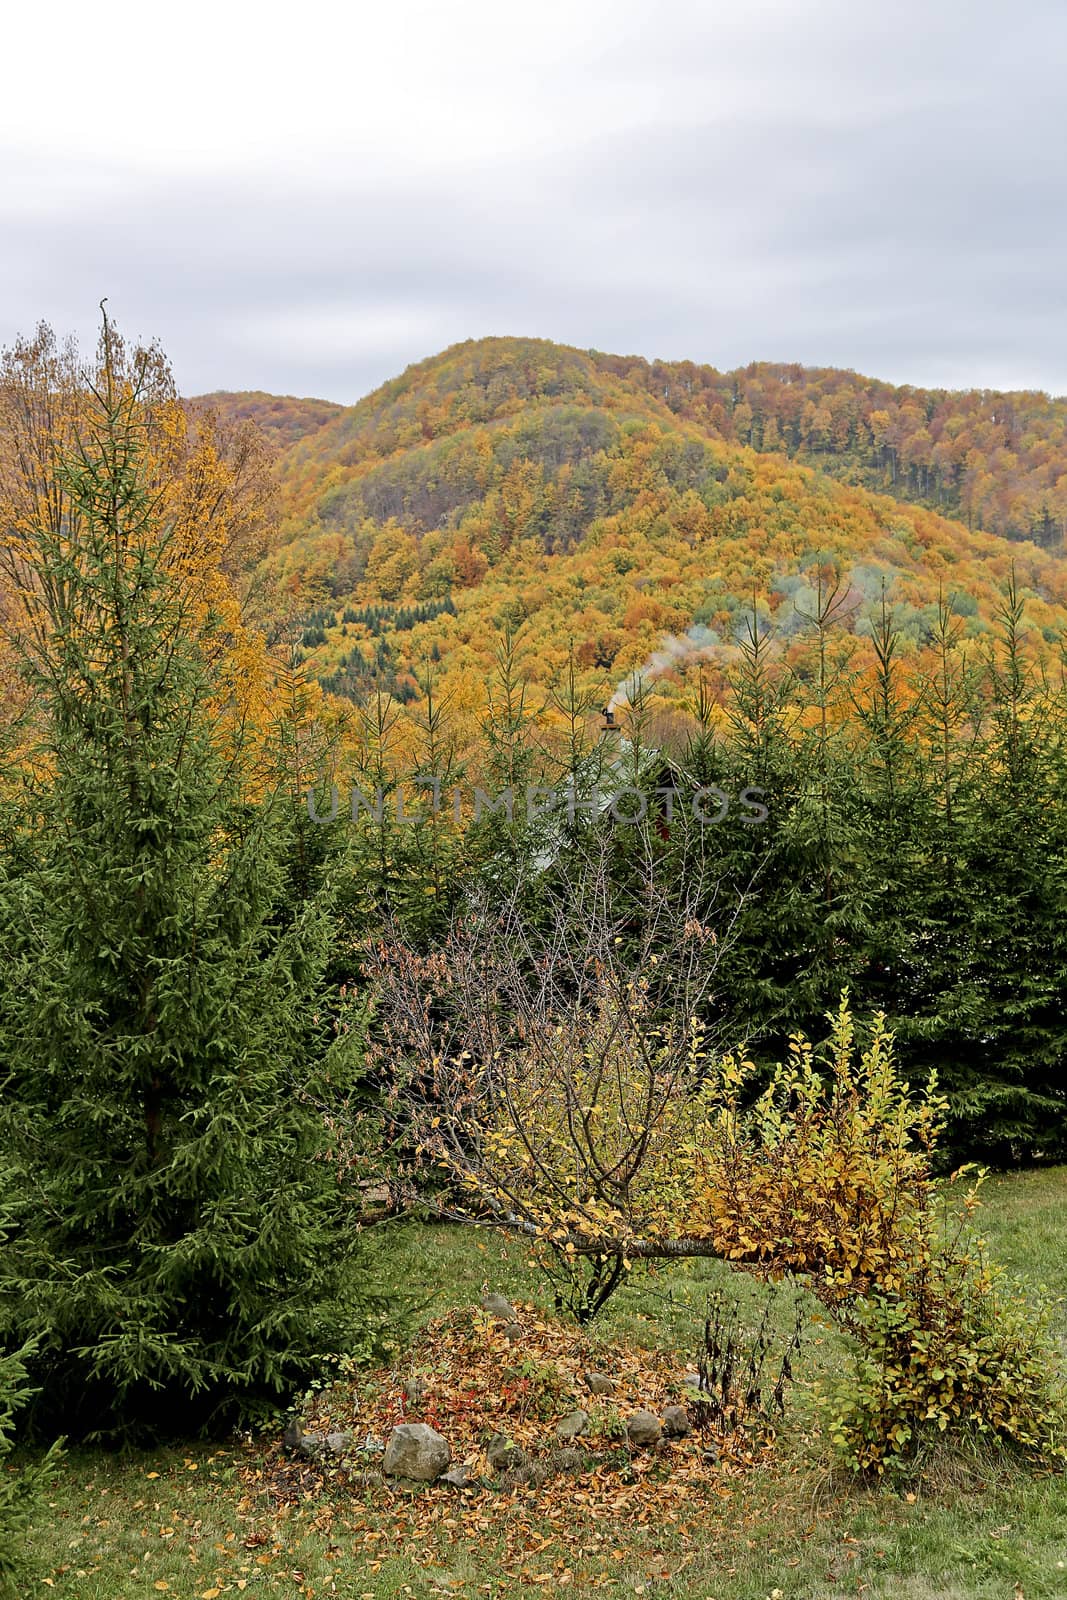 Autumn foliage in the mountains